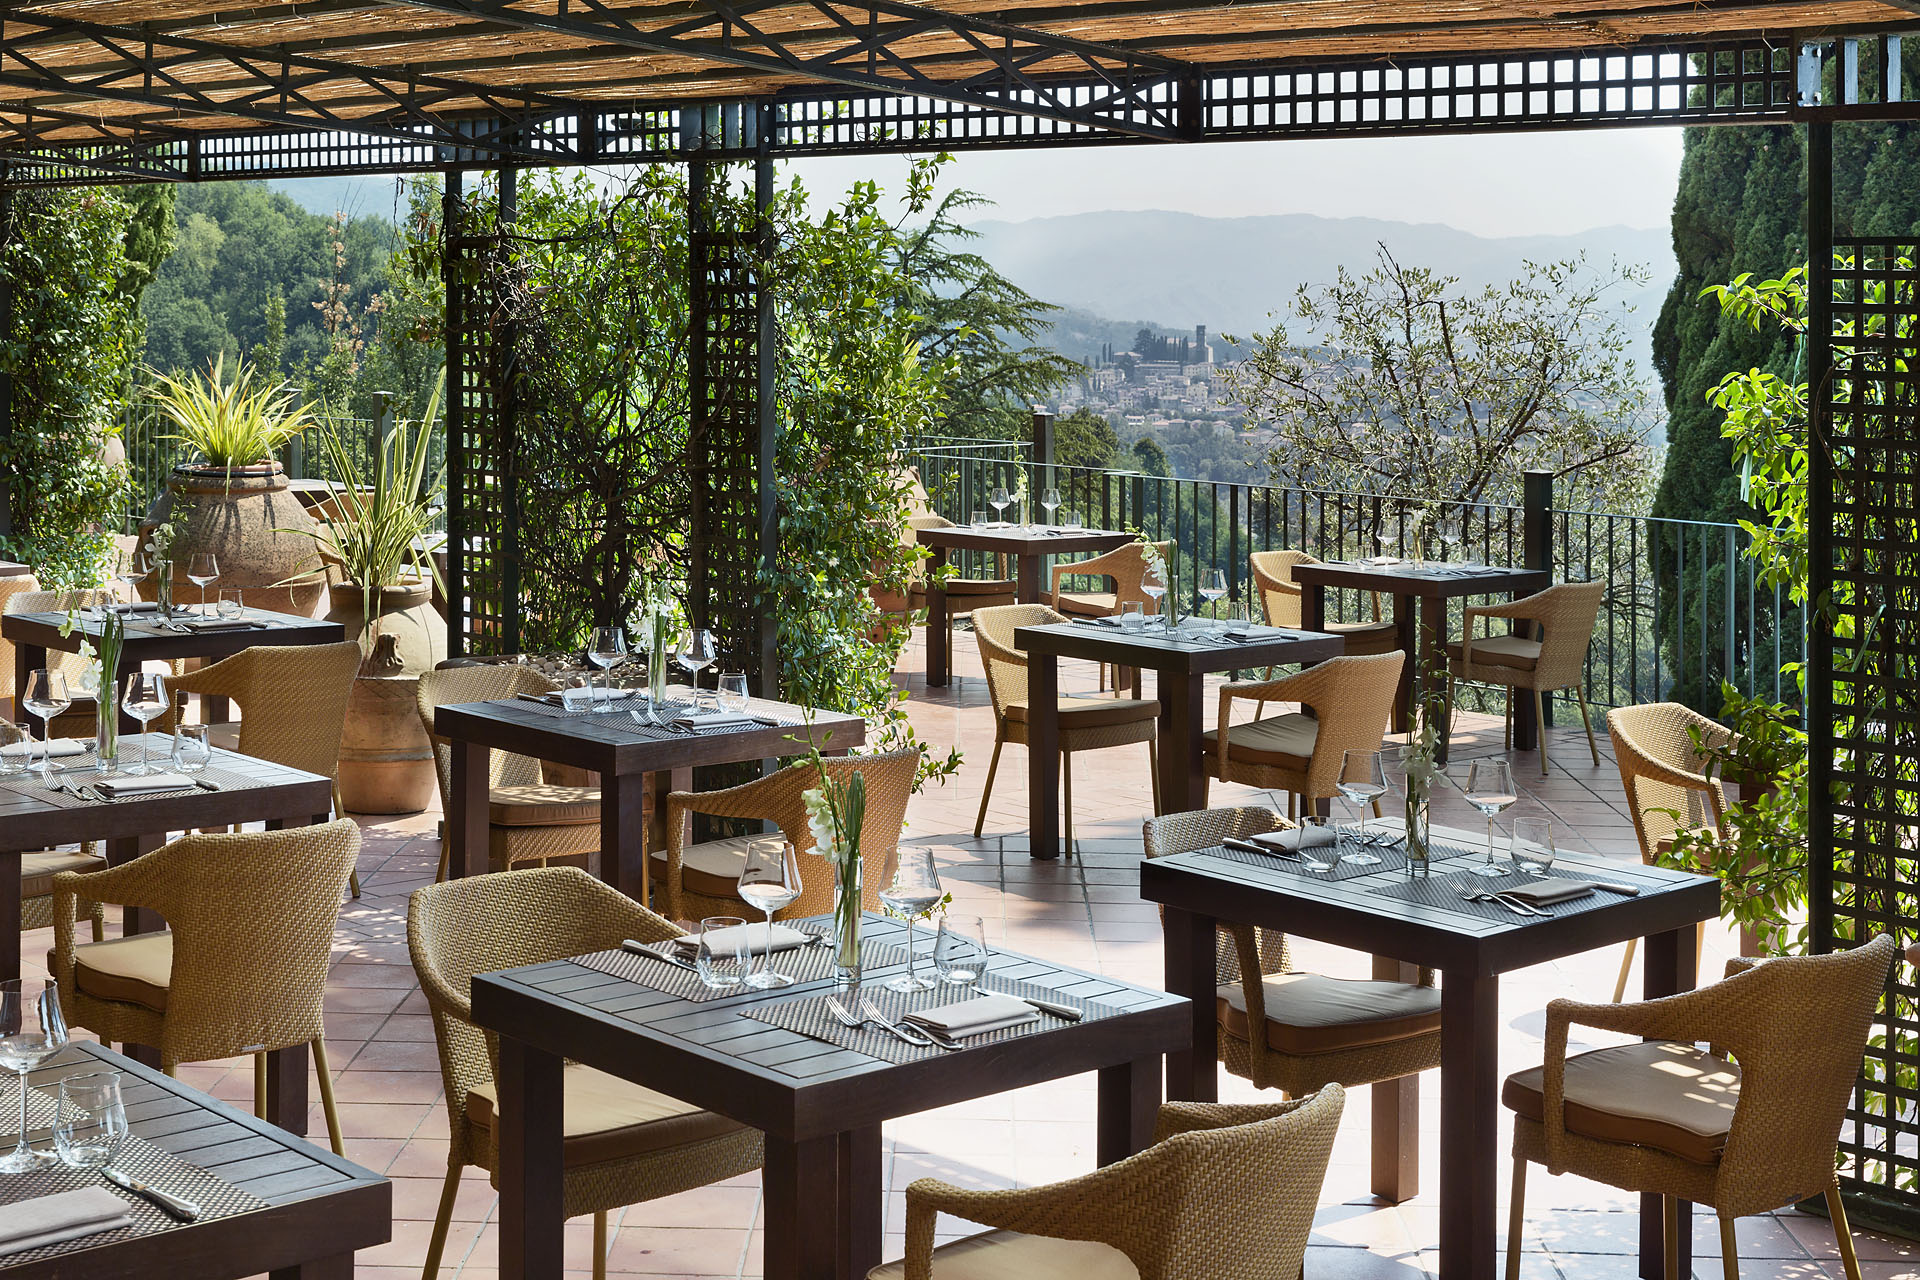 renaissance tuscany ristorante la veranda5